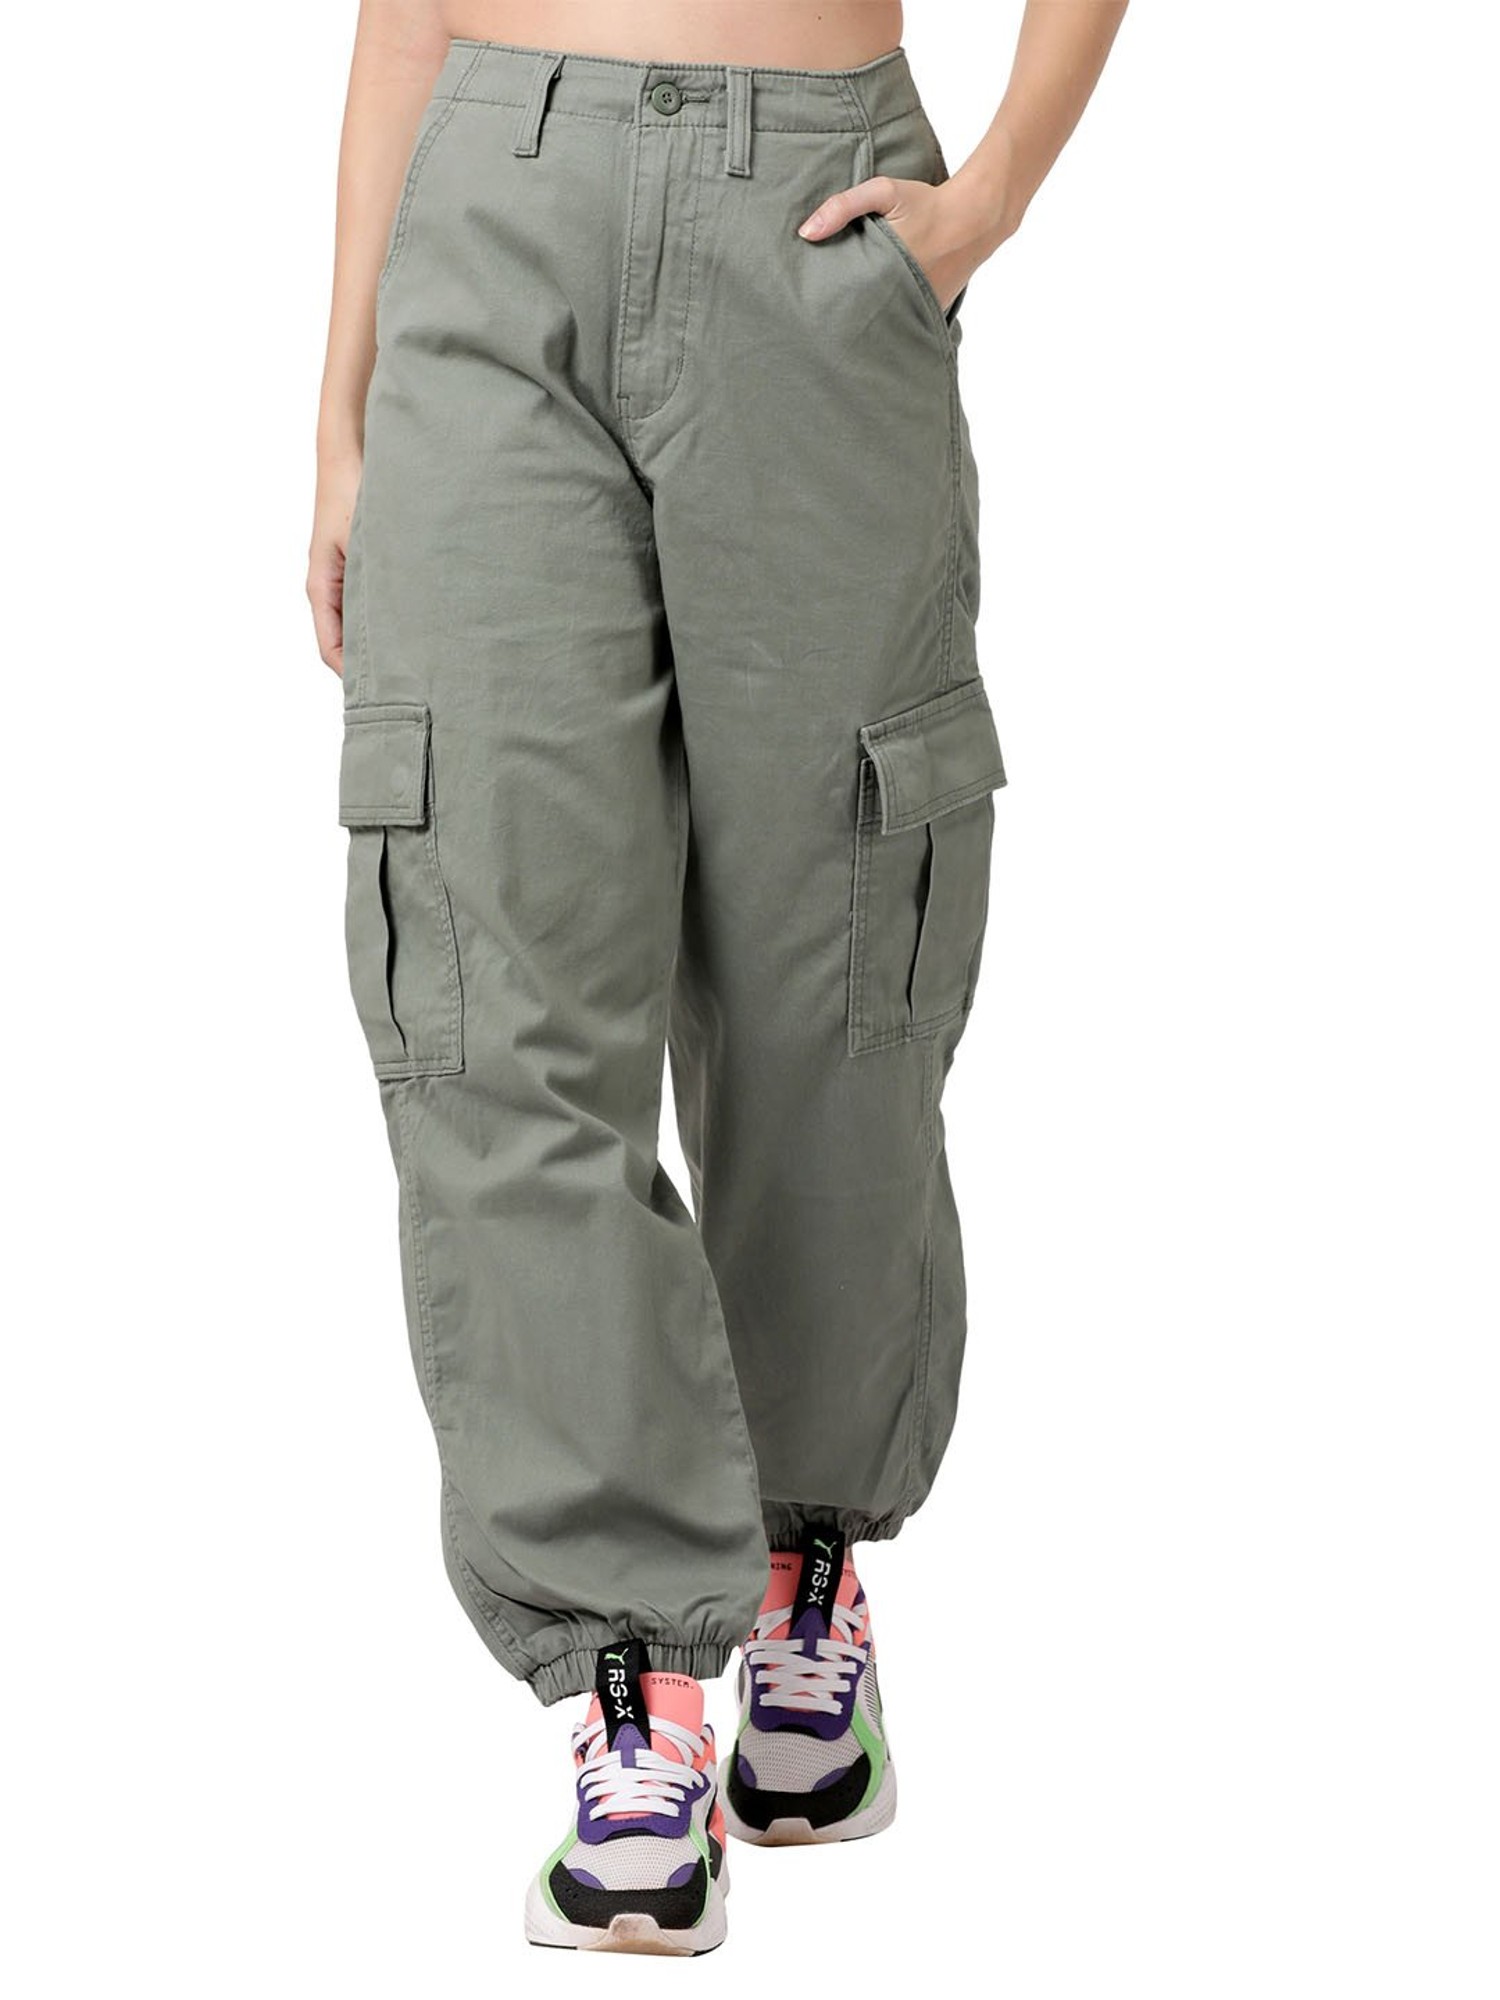 LEVIS Slim Fit Men Brown Trousers  Buy LEVIS Slim Fit Men Brown Trousers  Online at Best Prices in India  Flipkartcom